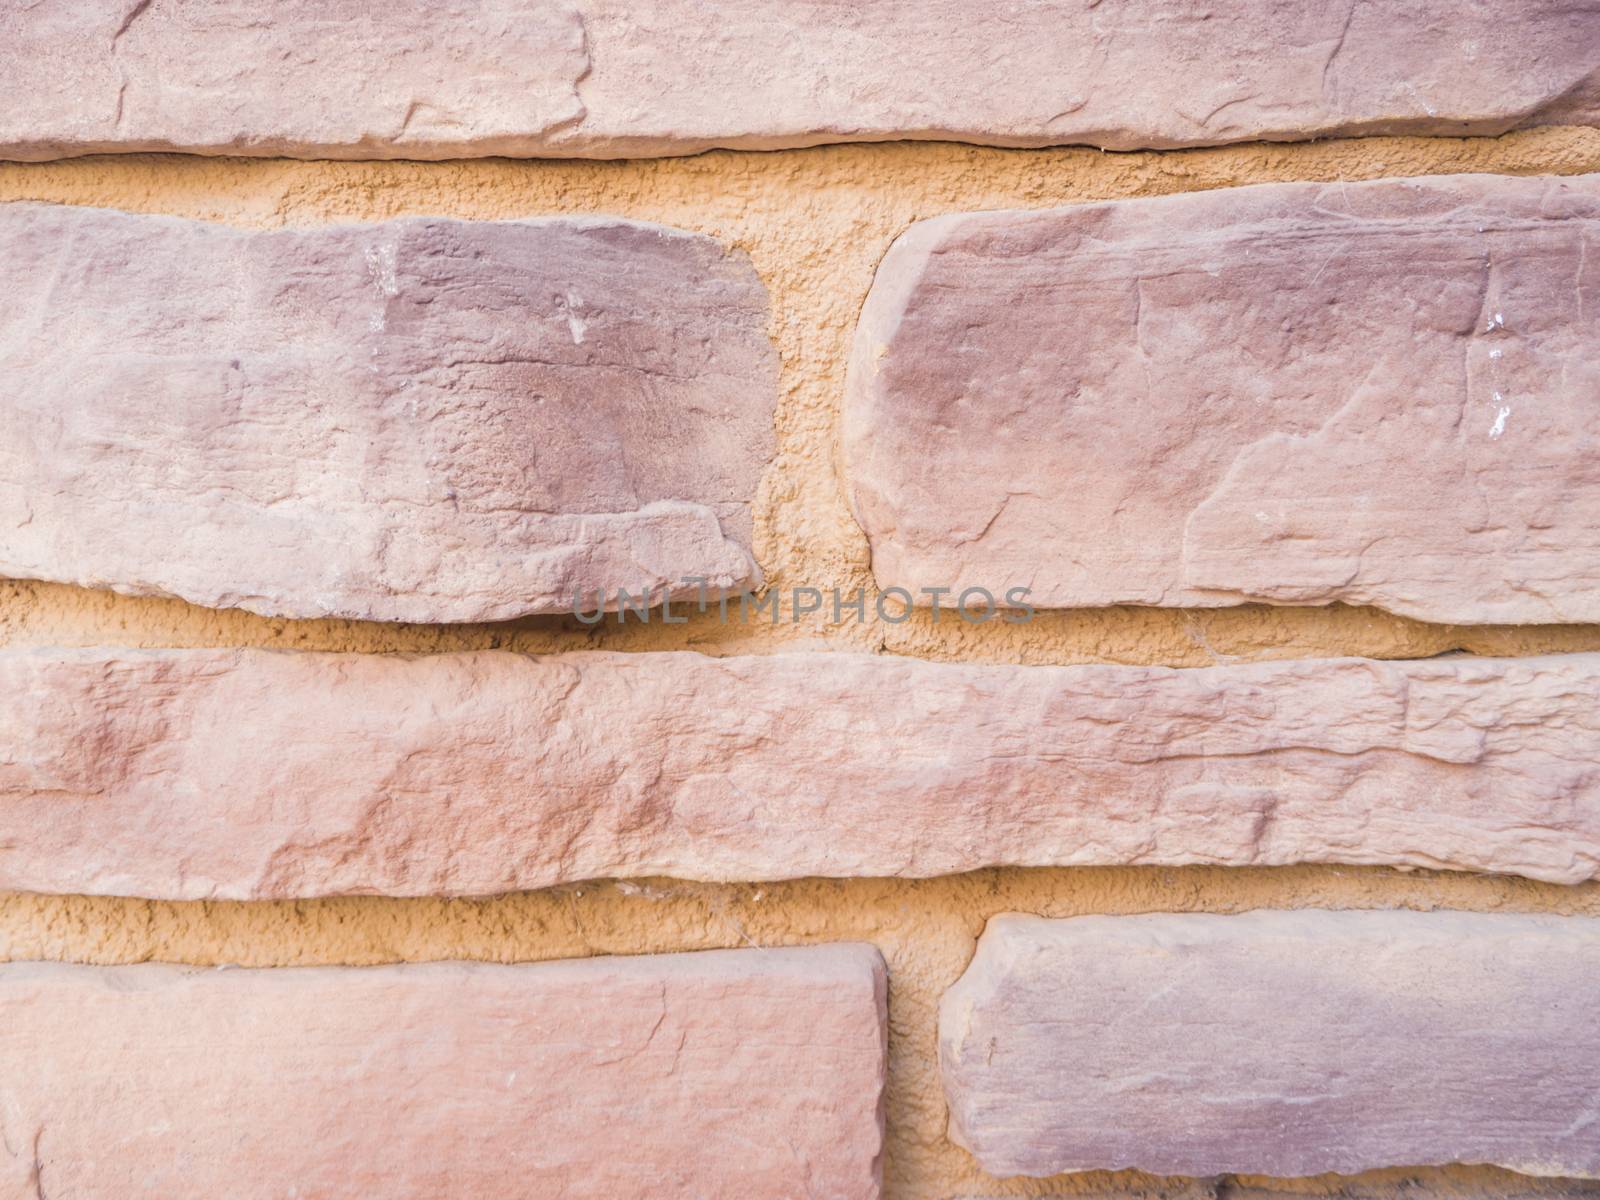 Mmasonry of stoun wall, background by fascinadora